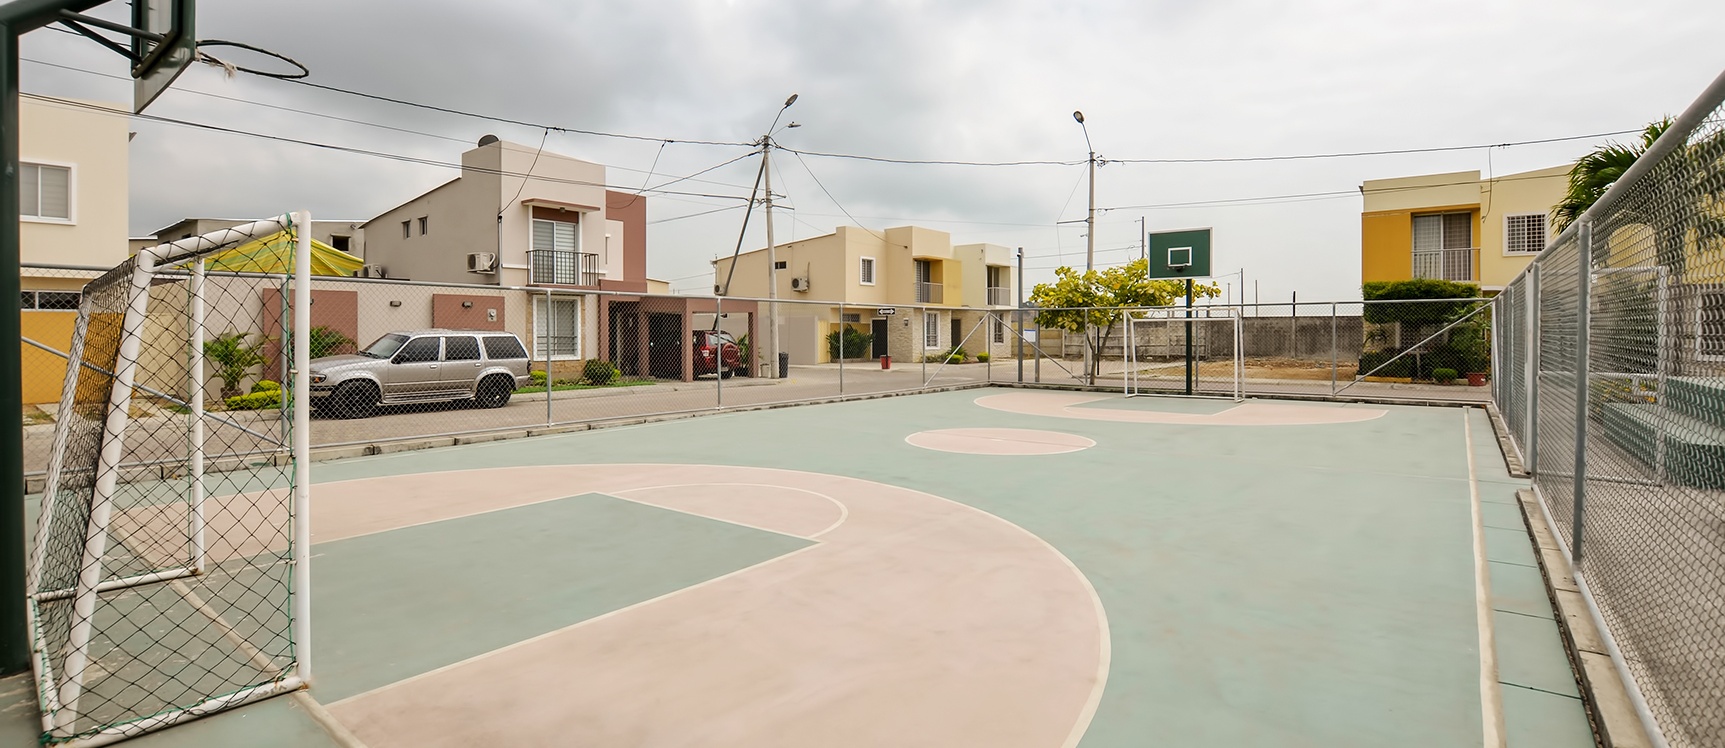 GeoBienes - Casa en alquiler en urbanización Arboletta sector Vía a Daule - Plusvalia Guayaquil Casas de venta y alquiler Inmobiliaria Ecuador